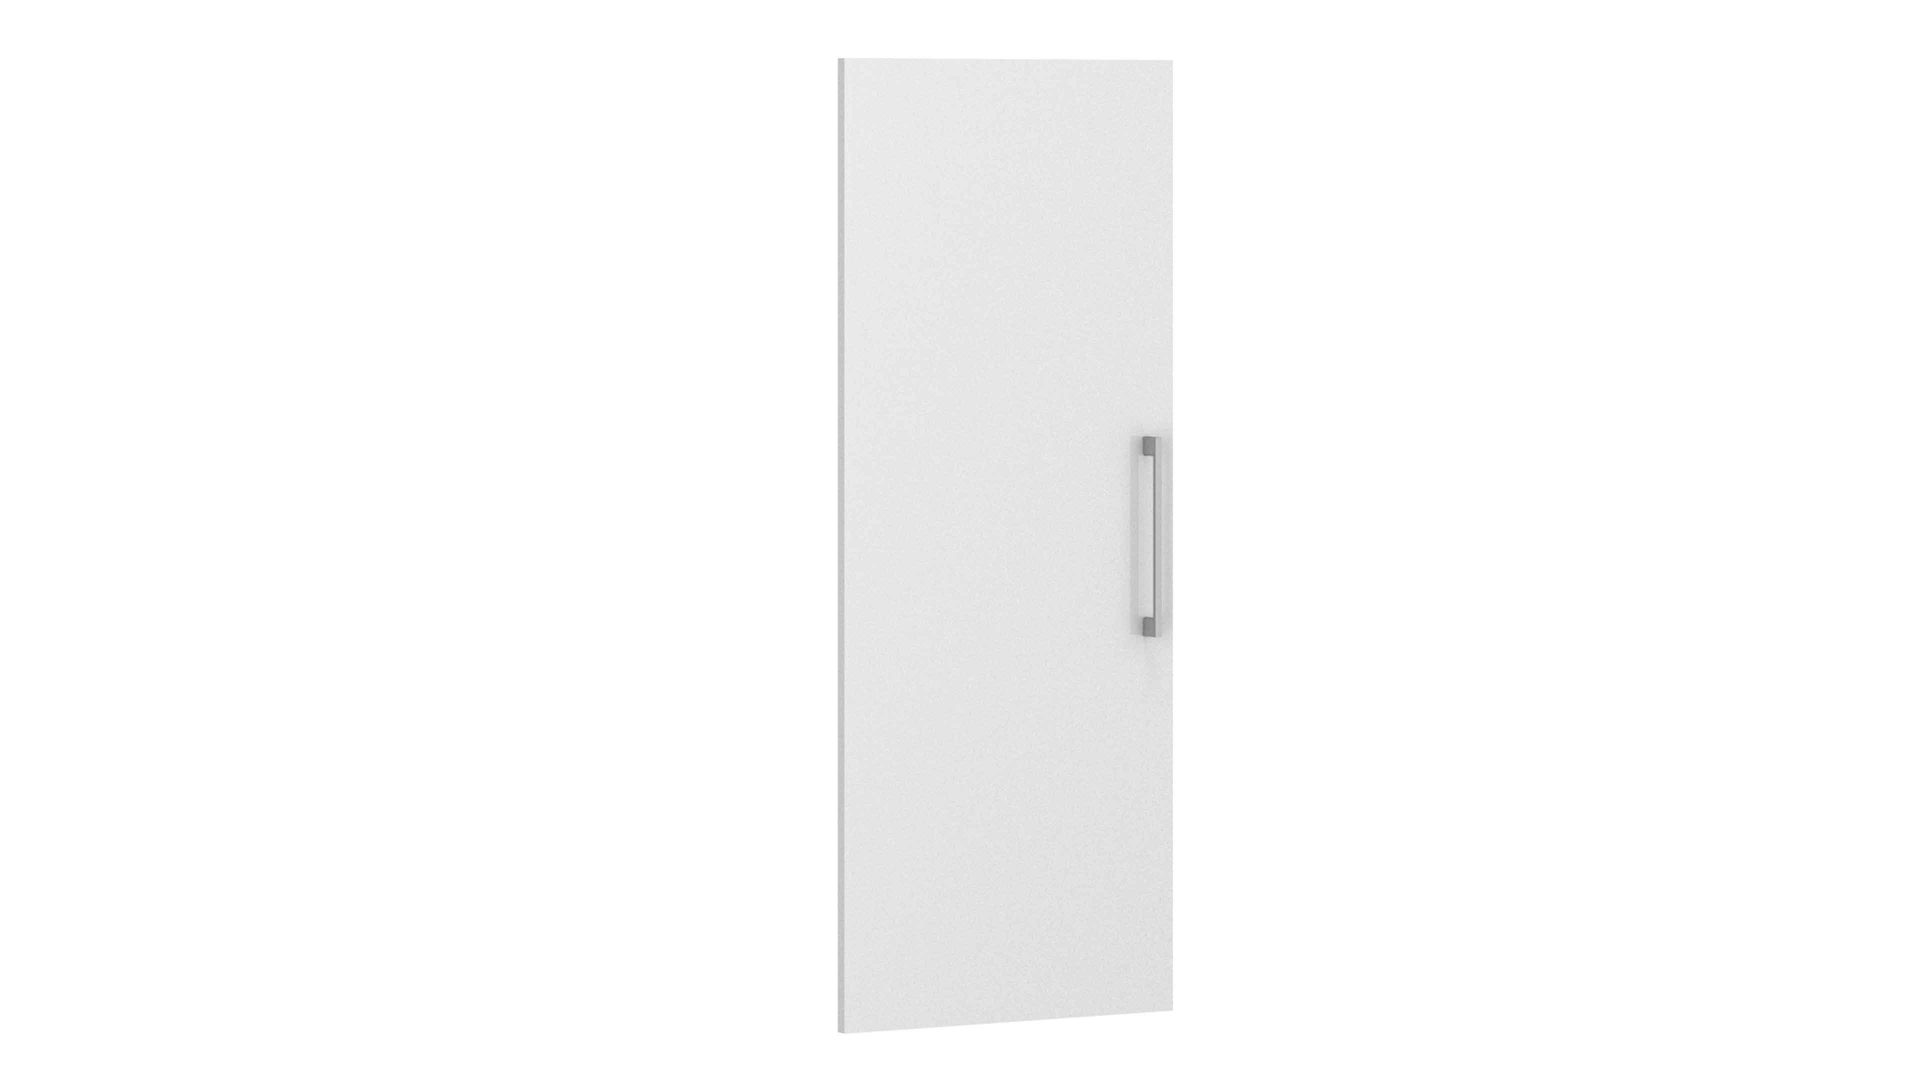 Türen-Set Maja möbel aus Holz in Weiß MAJA MÖBEL Büroprogramm Homebase - Türen-Set Hochglanz Weiß - zwei Türen